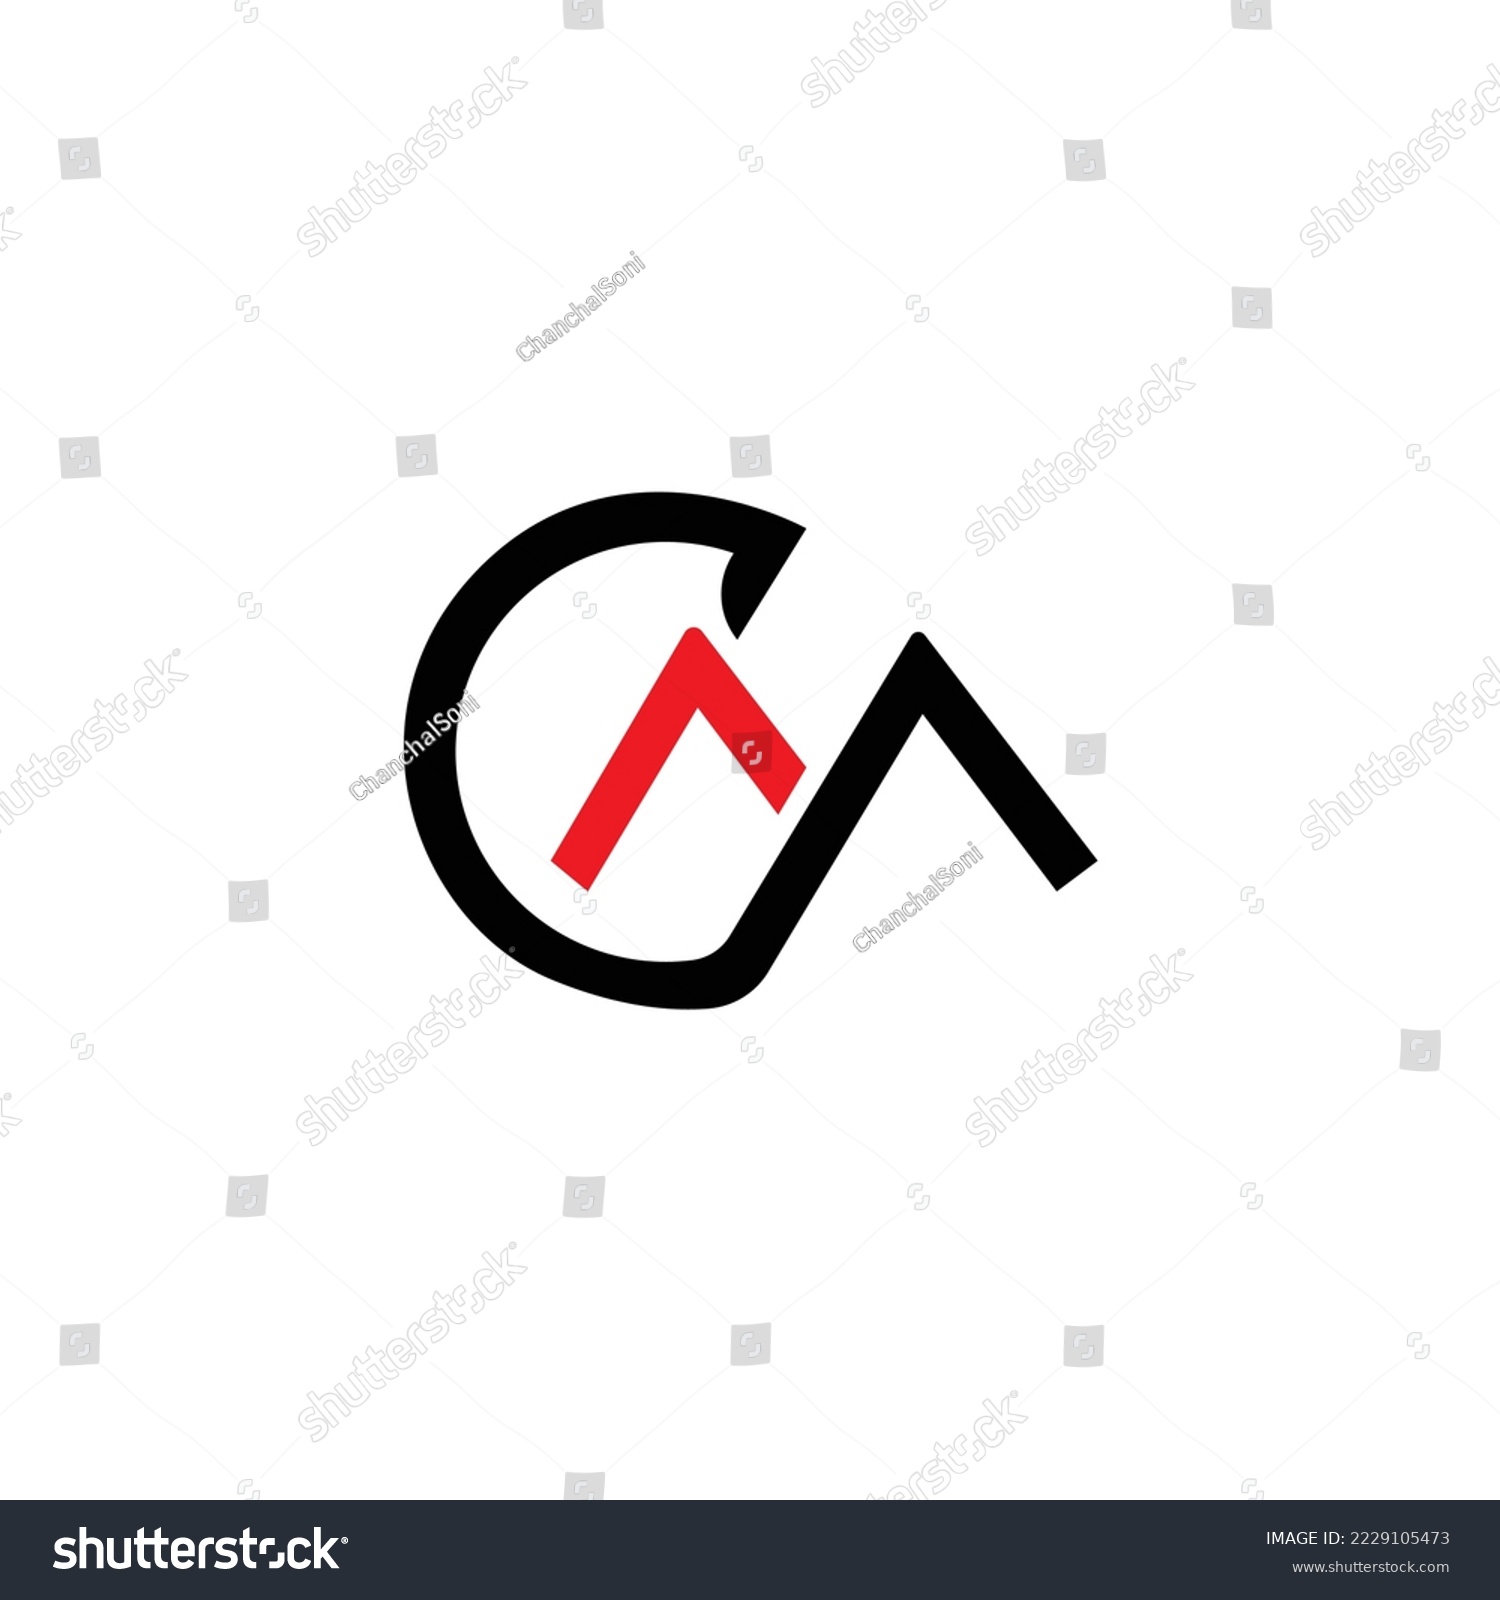 SVG of CM logo with line design svg